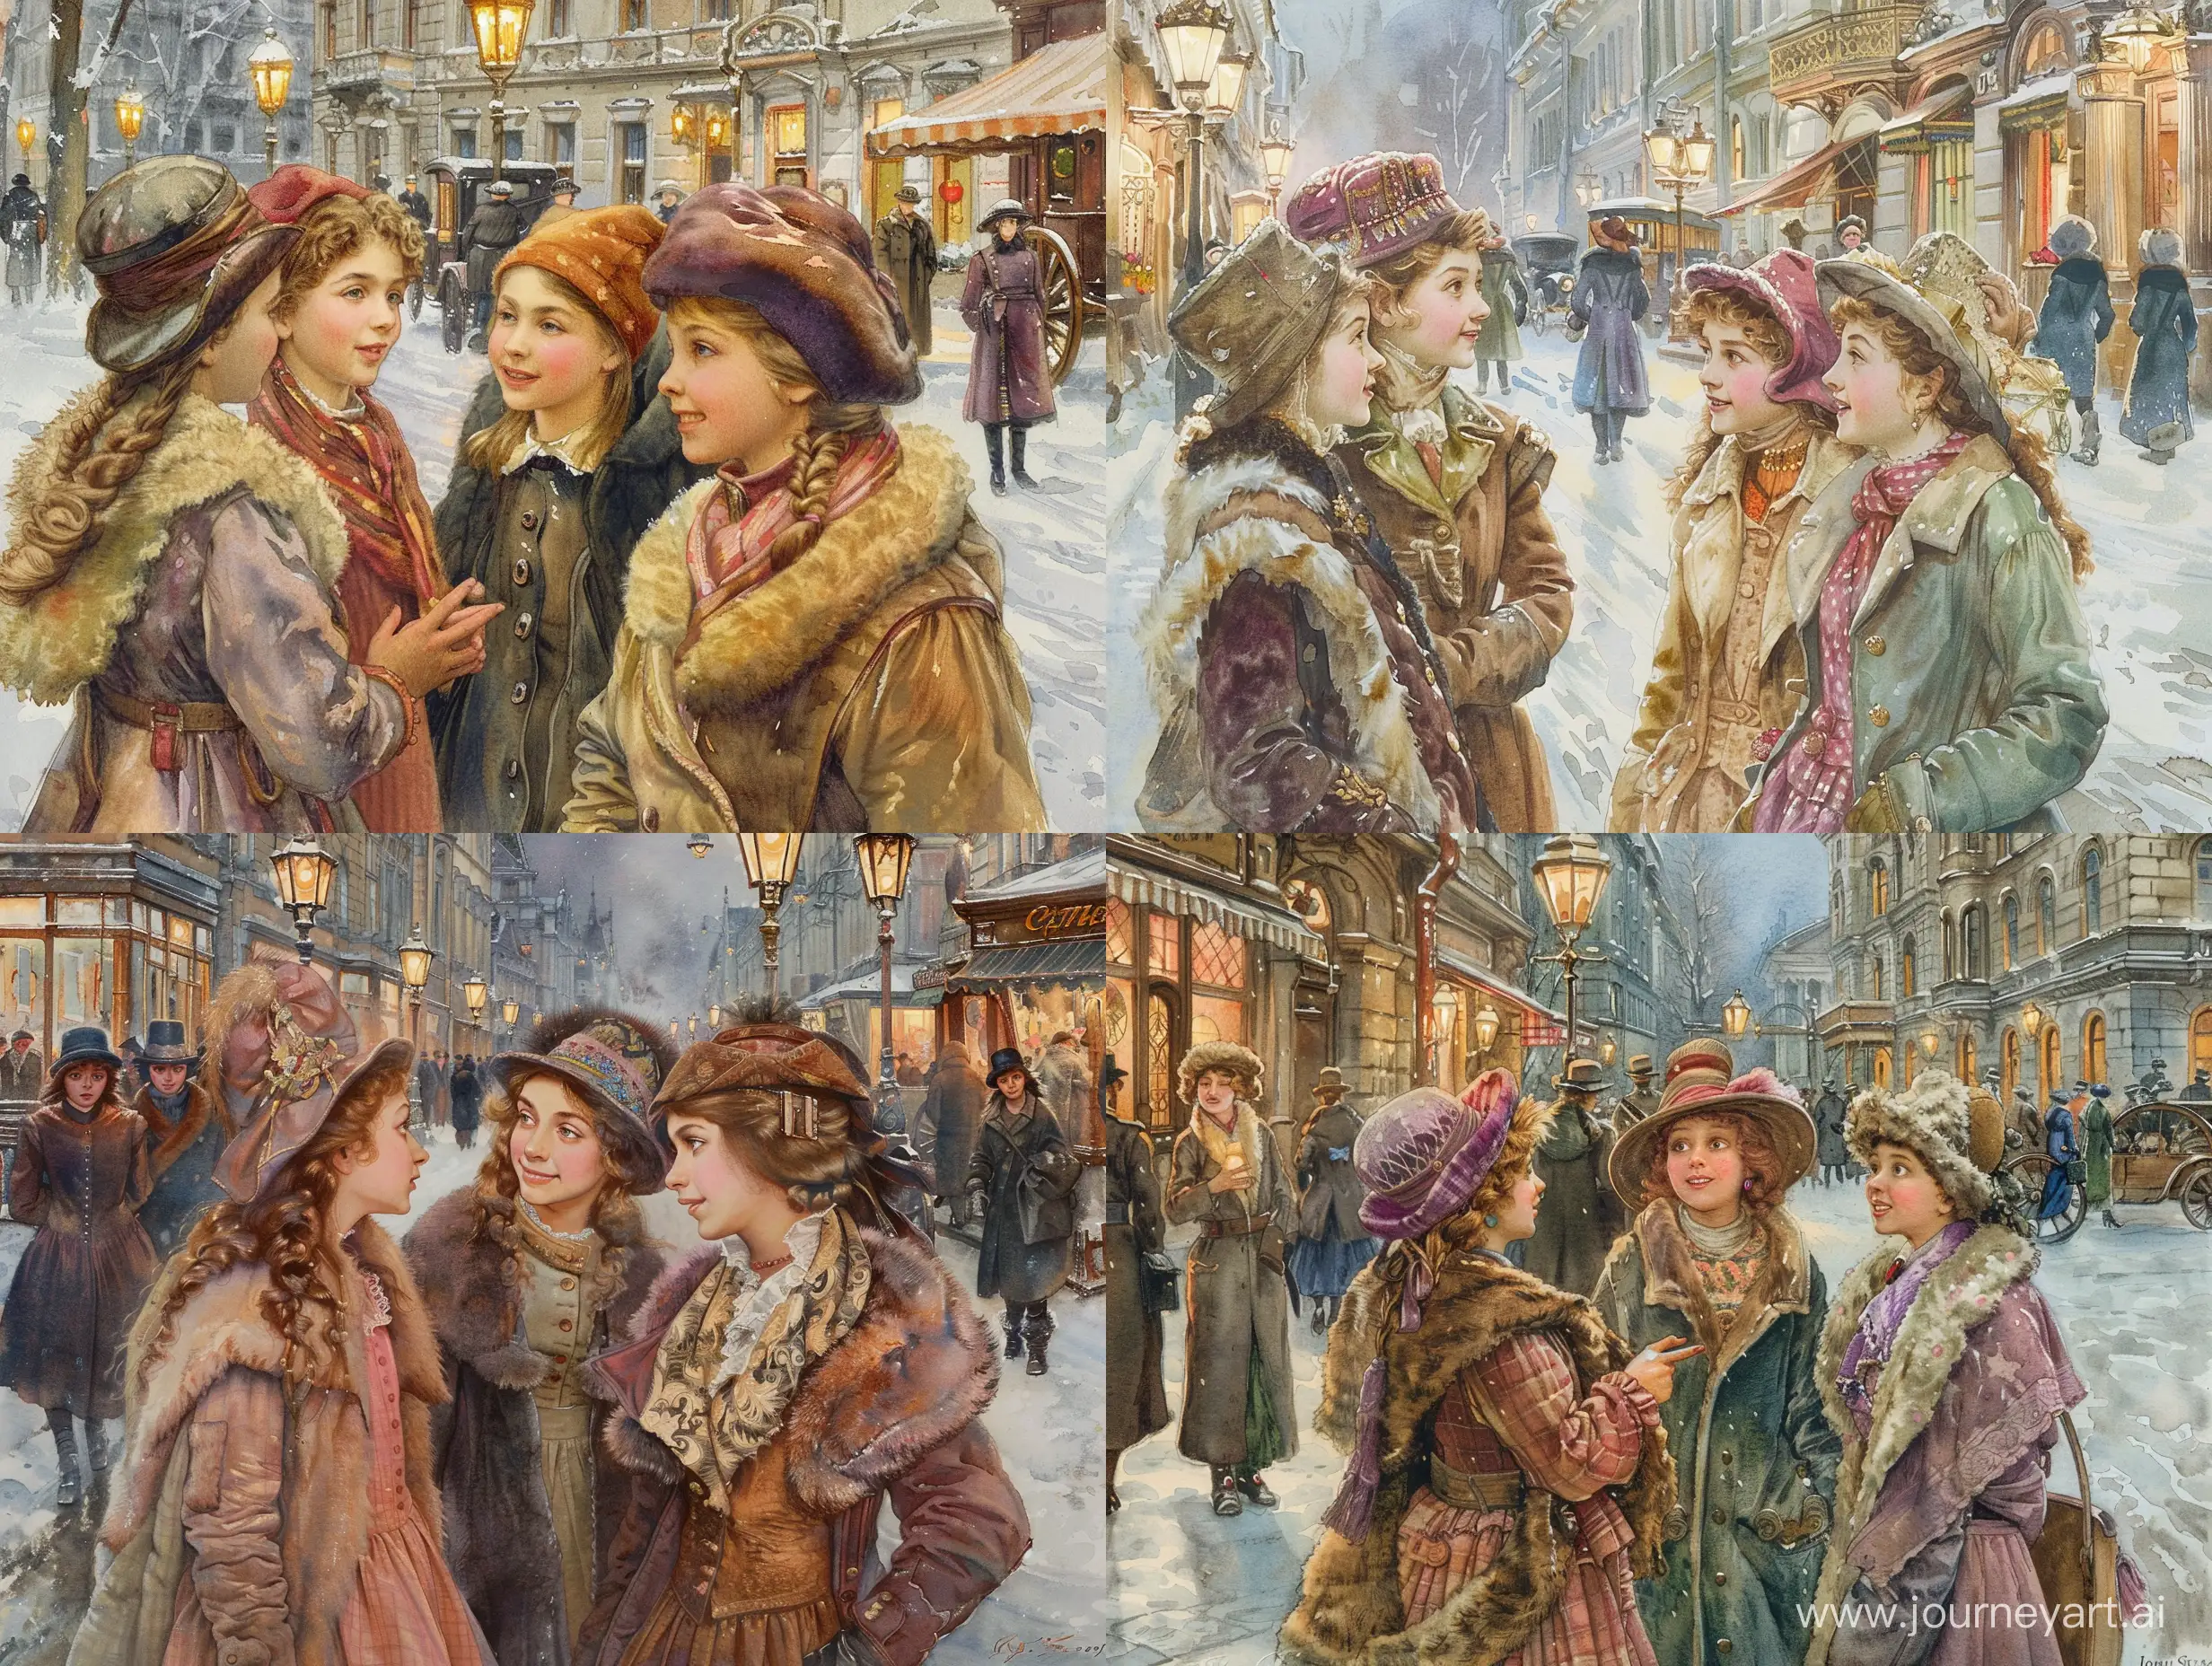 Группа молодых модных девушек жительниц Петербурга гуляют по зимней улице города. На улице Санкт-Петербурга с фонарями, прохожими, магазинами, каретами и извозчиками. Девушки общаются друг с другом и им весело. При общении они смотрят друг другу в глаза. Девушки одеты тепло и красиво по моде 1910 года. На них тёплые шапочки и шубки с мехом или пальто, всё сочетается по цвету и стилю. Акварель в стиле и цвете John Everett Millais. Действие происходит на улице Санкт-Петербурга зима 1910 года.